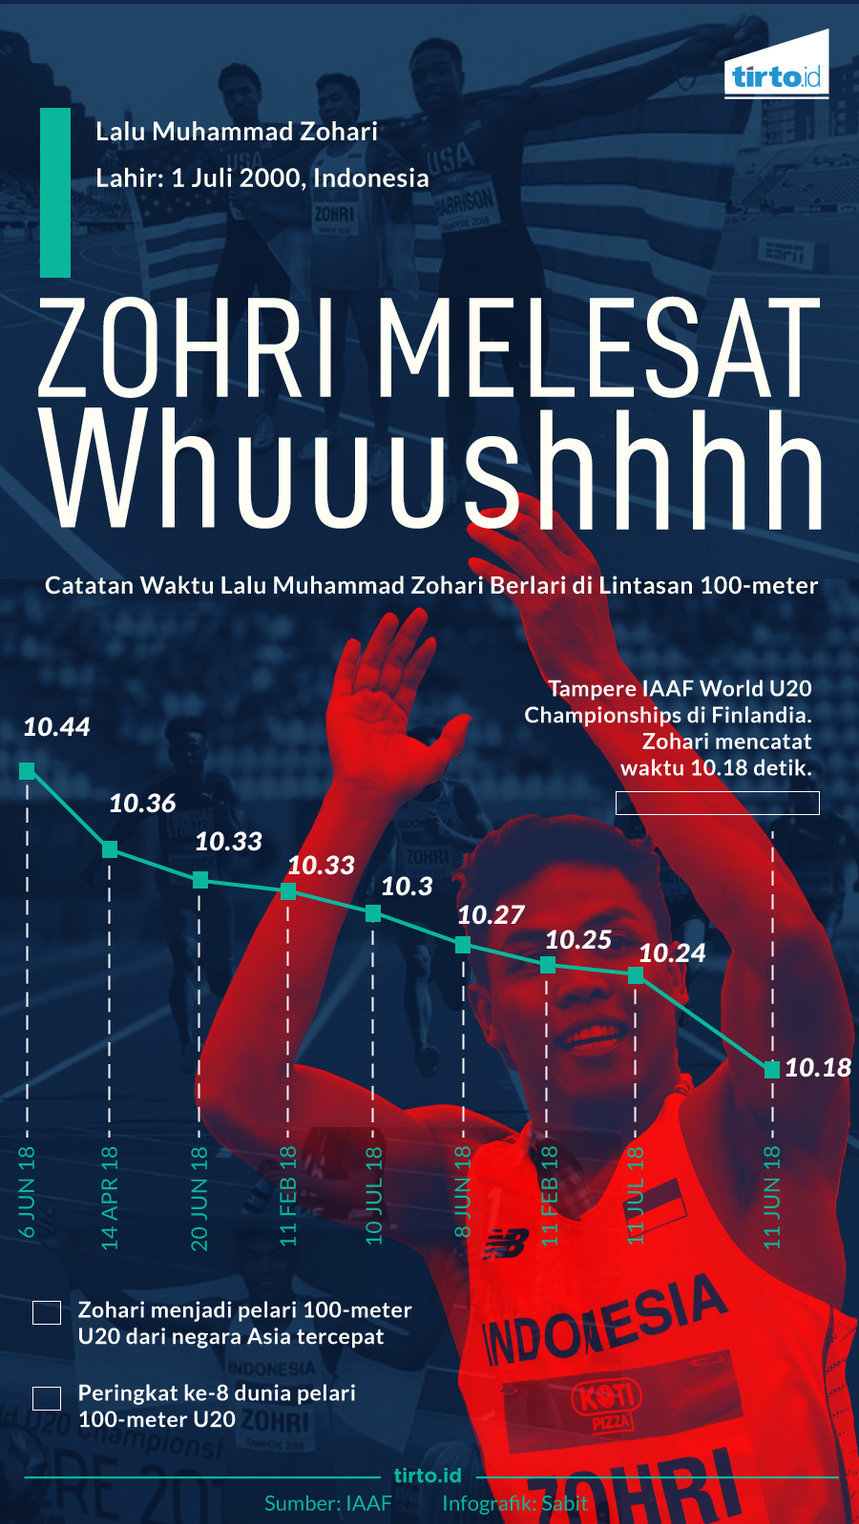 Infografik Zohri Melesat Whuuushhhh